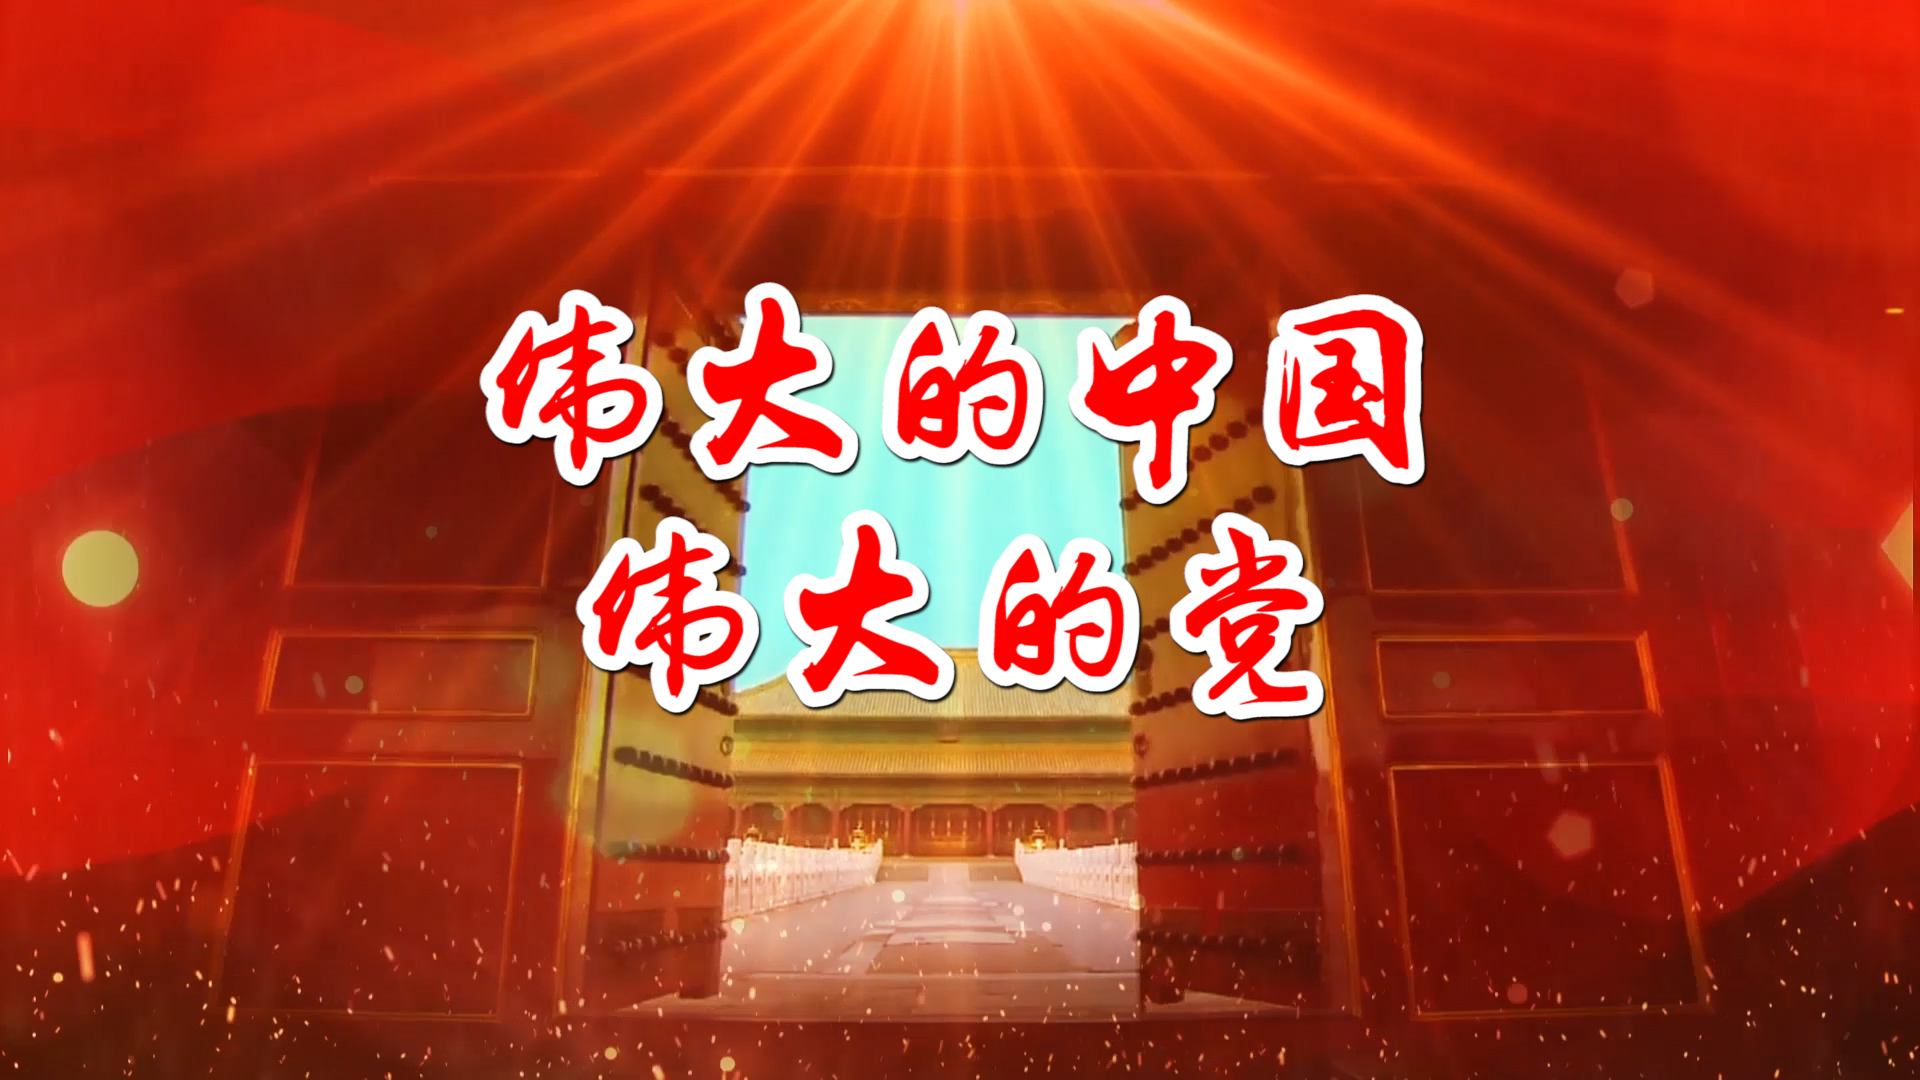 伟大的中国伟大的党 合唱MV字幕配乐伴奏舞台演出LED背景大屏幕视频素材TV